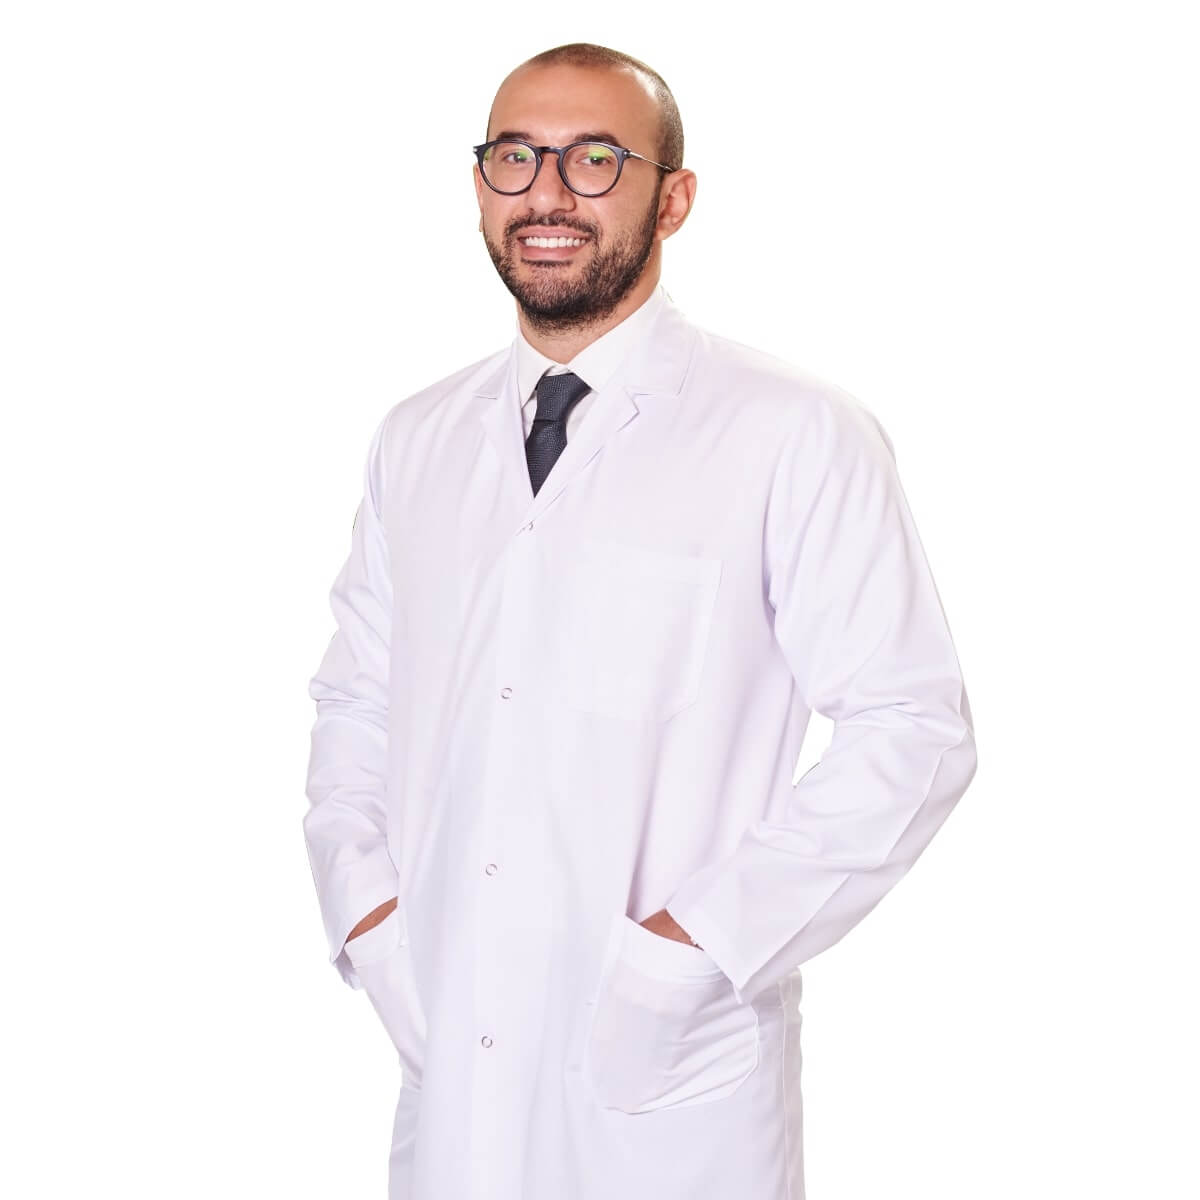 دكتور خالد صالح علاج تأخر الانجاب والعقم